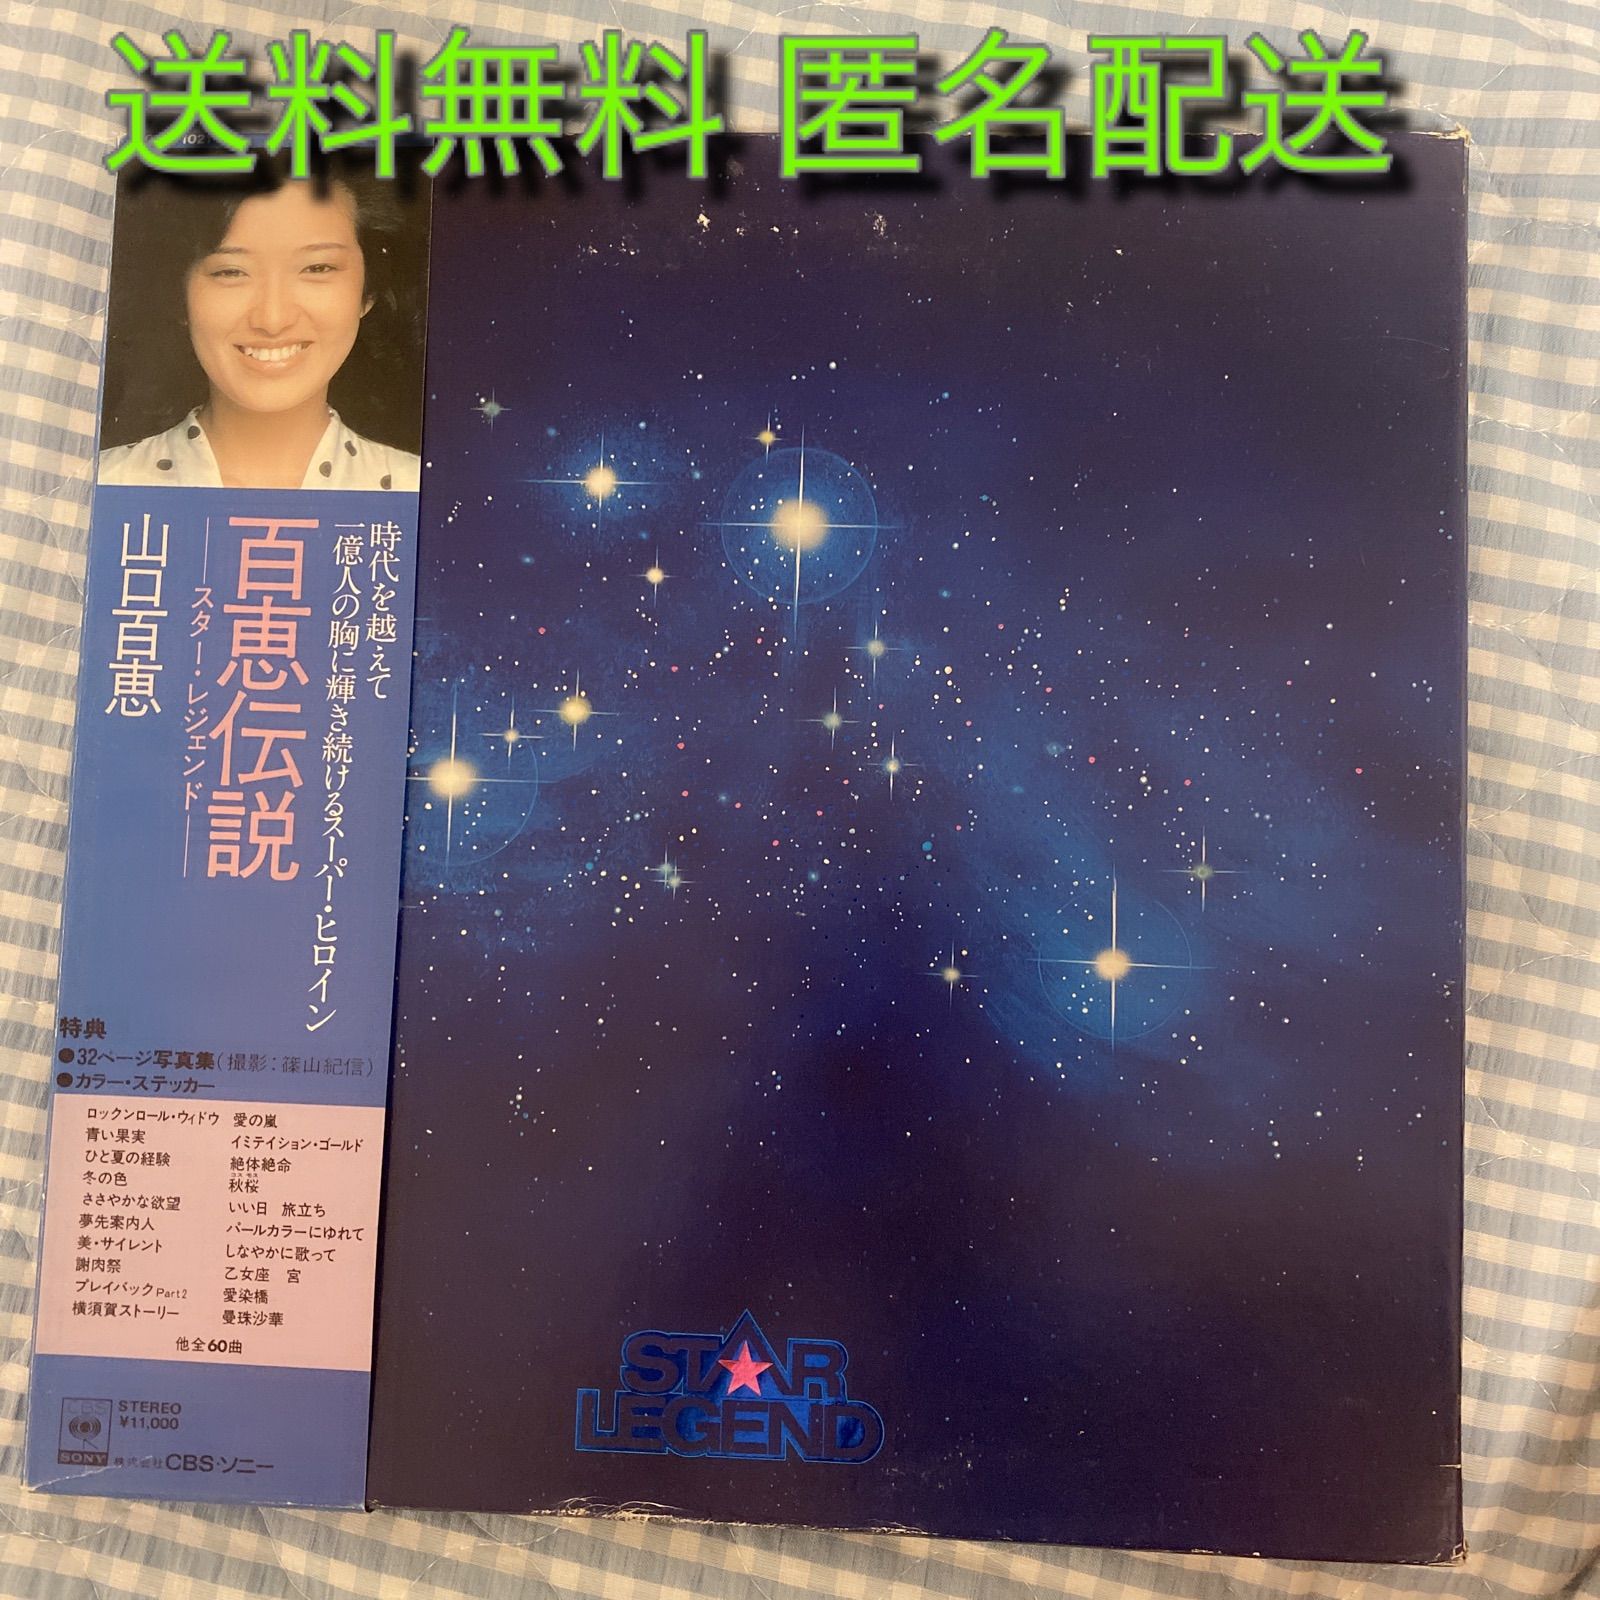 ○山口百恵 / 百恵伝説 Star Legend (国内盤LP 5枚組BOX ) ※帯 ...